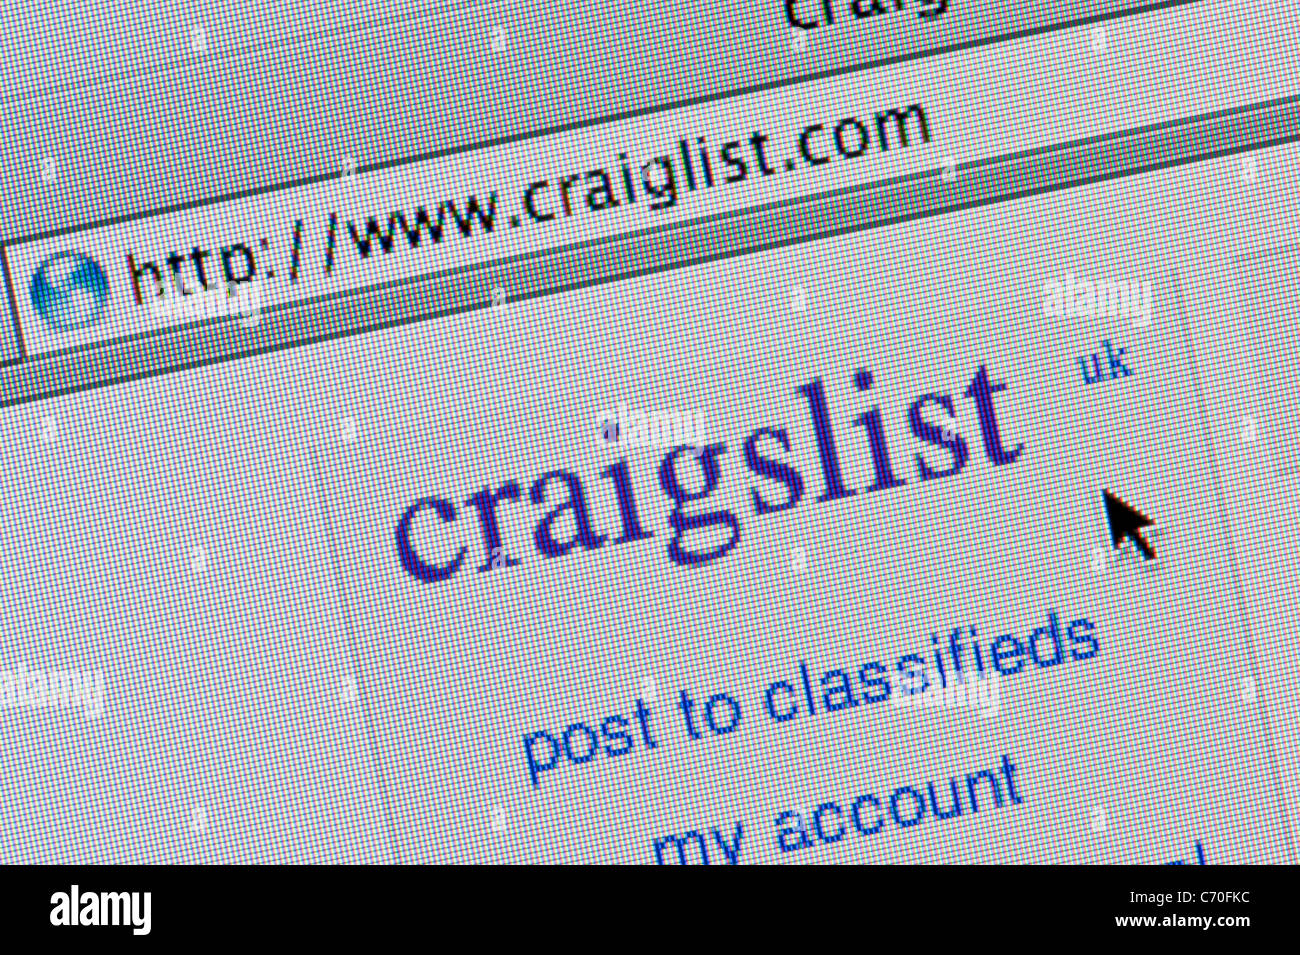 Chiusura del logo di craigslist come visto sul suo sito web. (Solo uso editoriale: -print, TV, e-book e Redazione sito web). Foto Stock